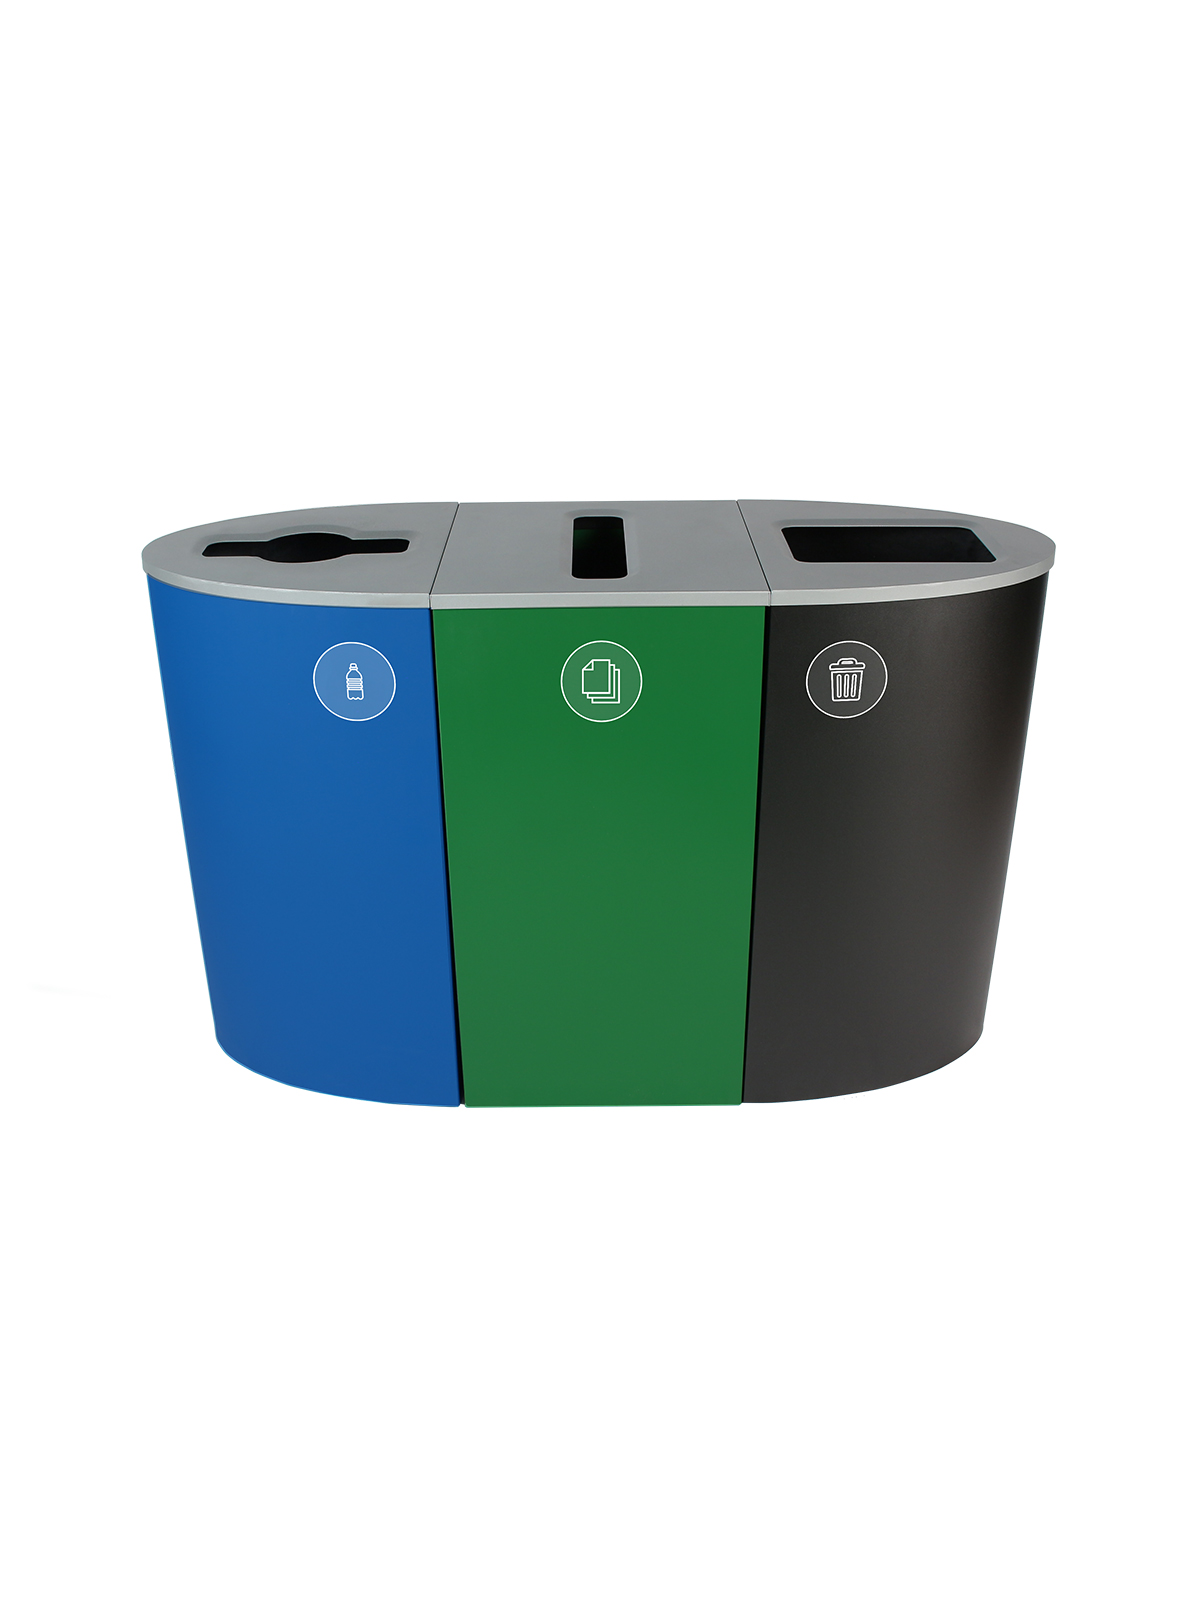 光谱 - 三重 - 俄勒冈州兼容 - 塑料容器 - 纸废物 - 混合插槽 - 全蓝绿色标题=